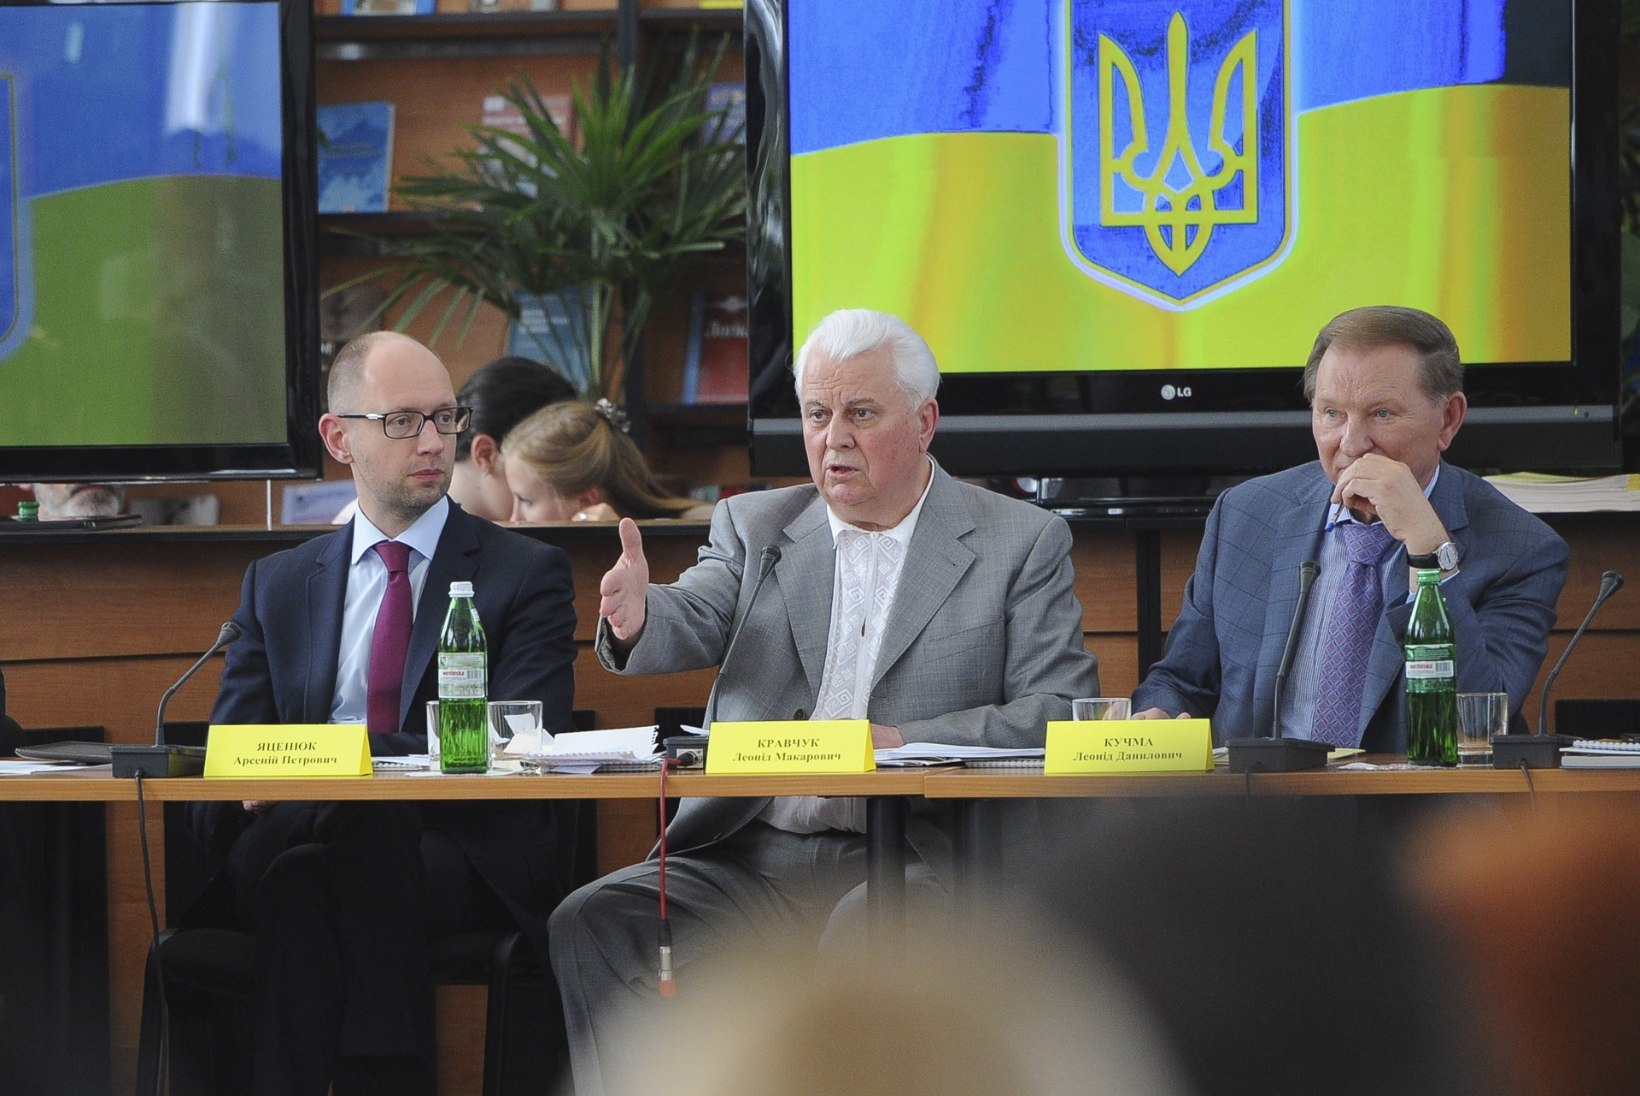 ESIMENE PRESIDENT: Janukovõtši suurim kuritegu oli Vene vägede Ukrainasse kutsumine